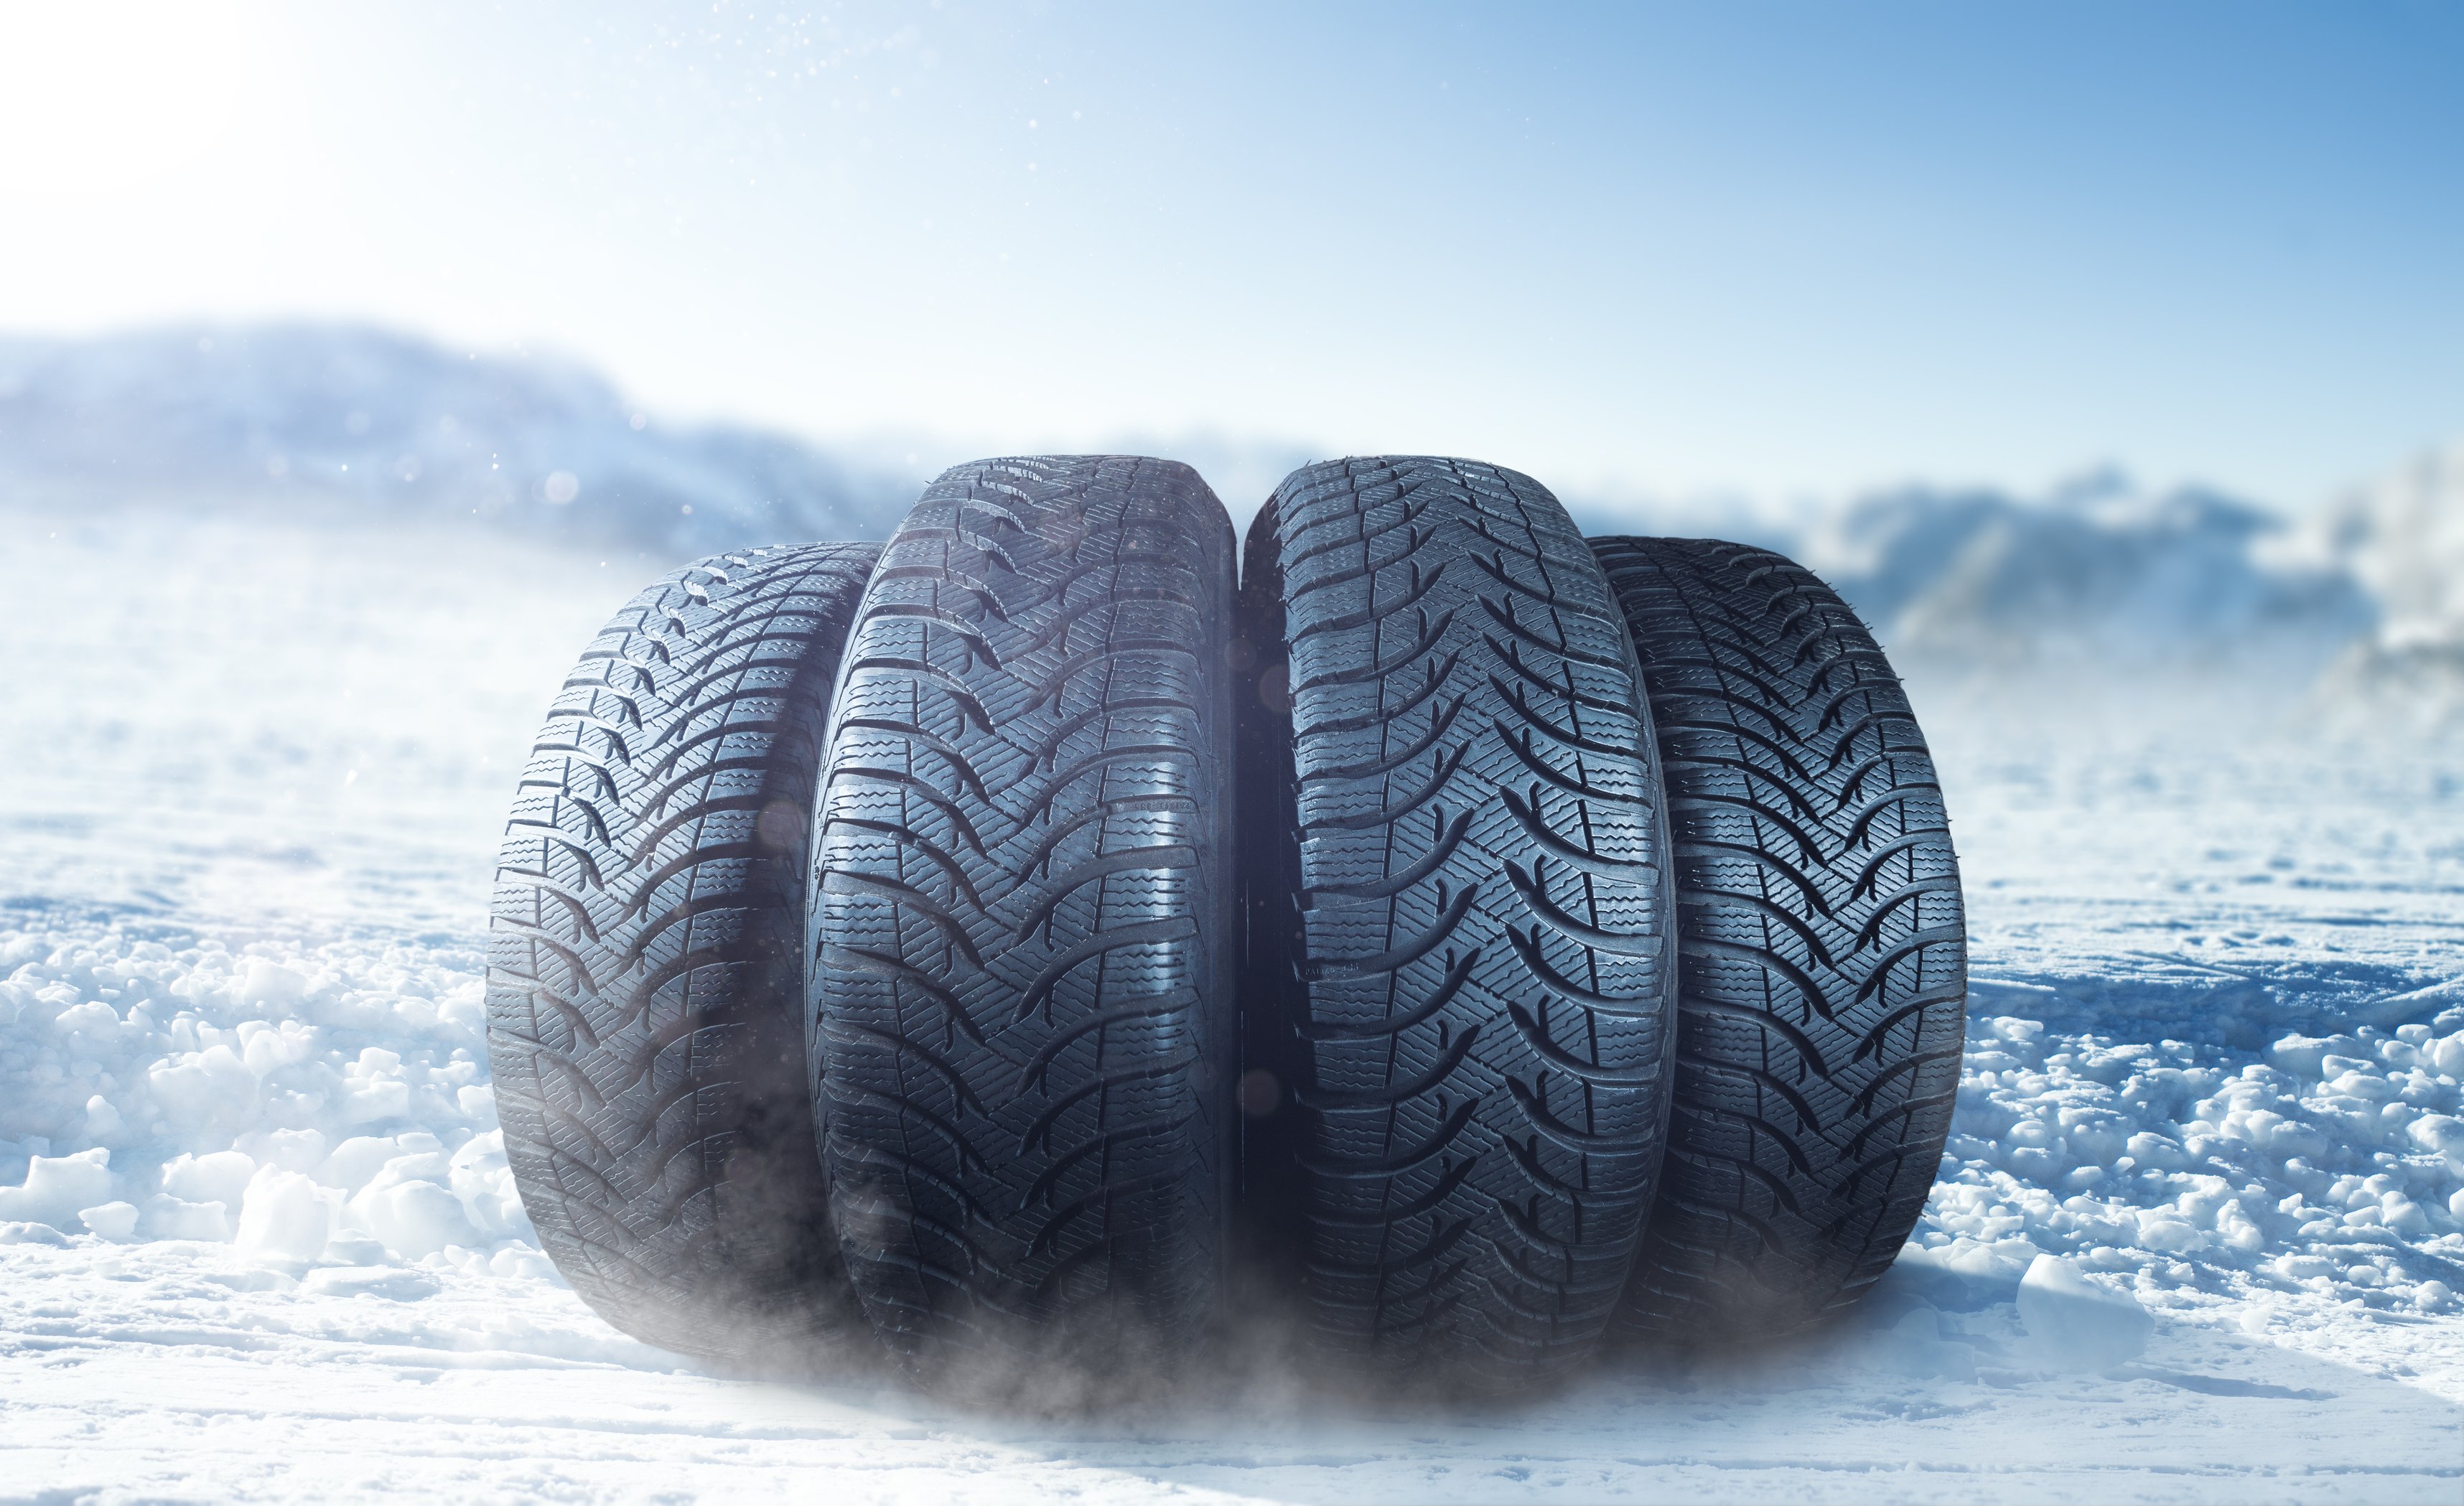 Cadenas de nieve o neumáticos de invierno?